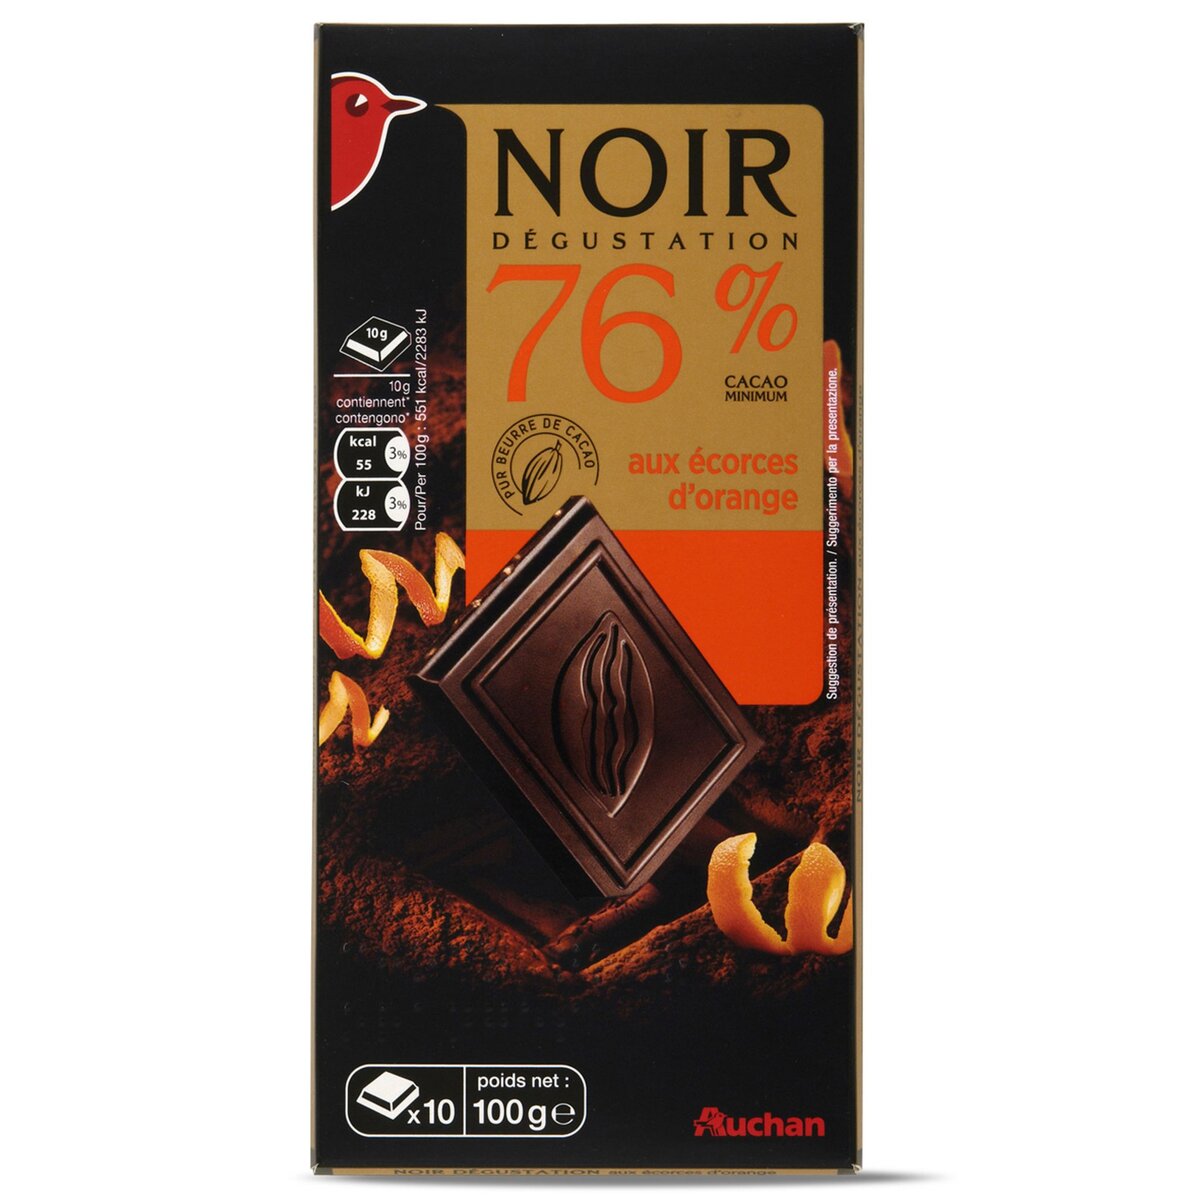 AUCHAN Auchan Tablette de chocolat noir dégustation 76% aux écorces d'orange 100g 1 pièce 100g